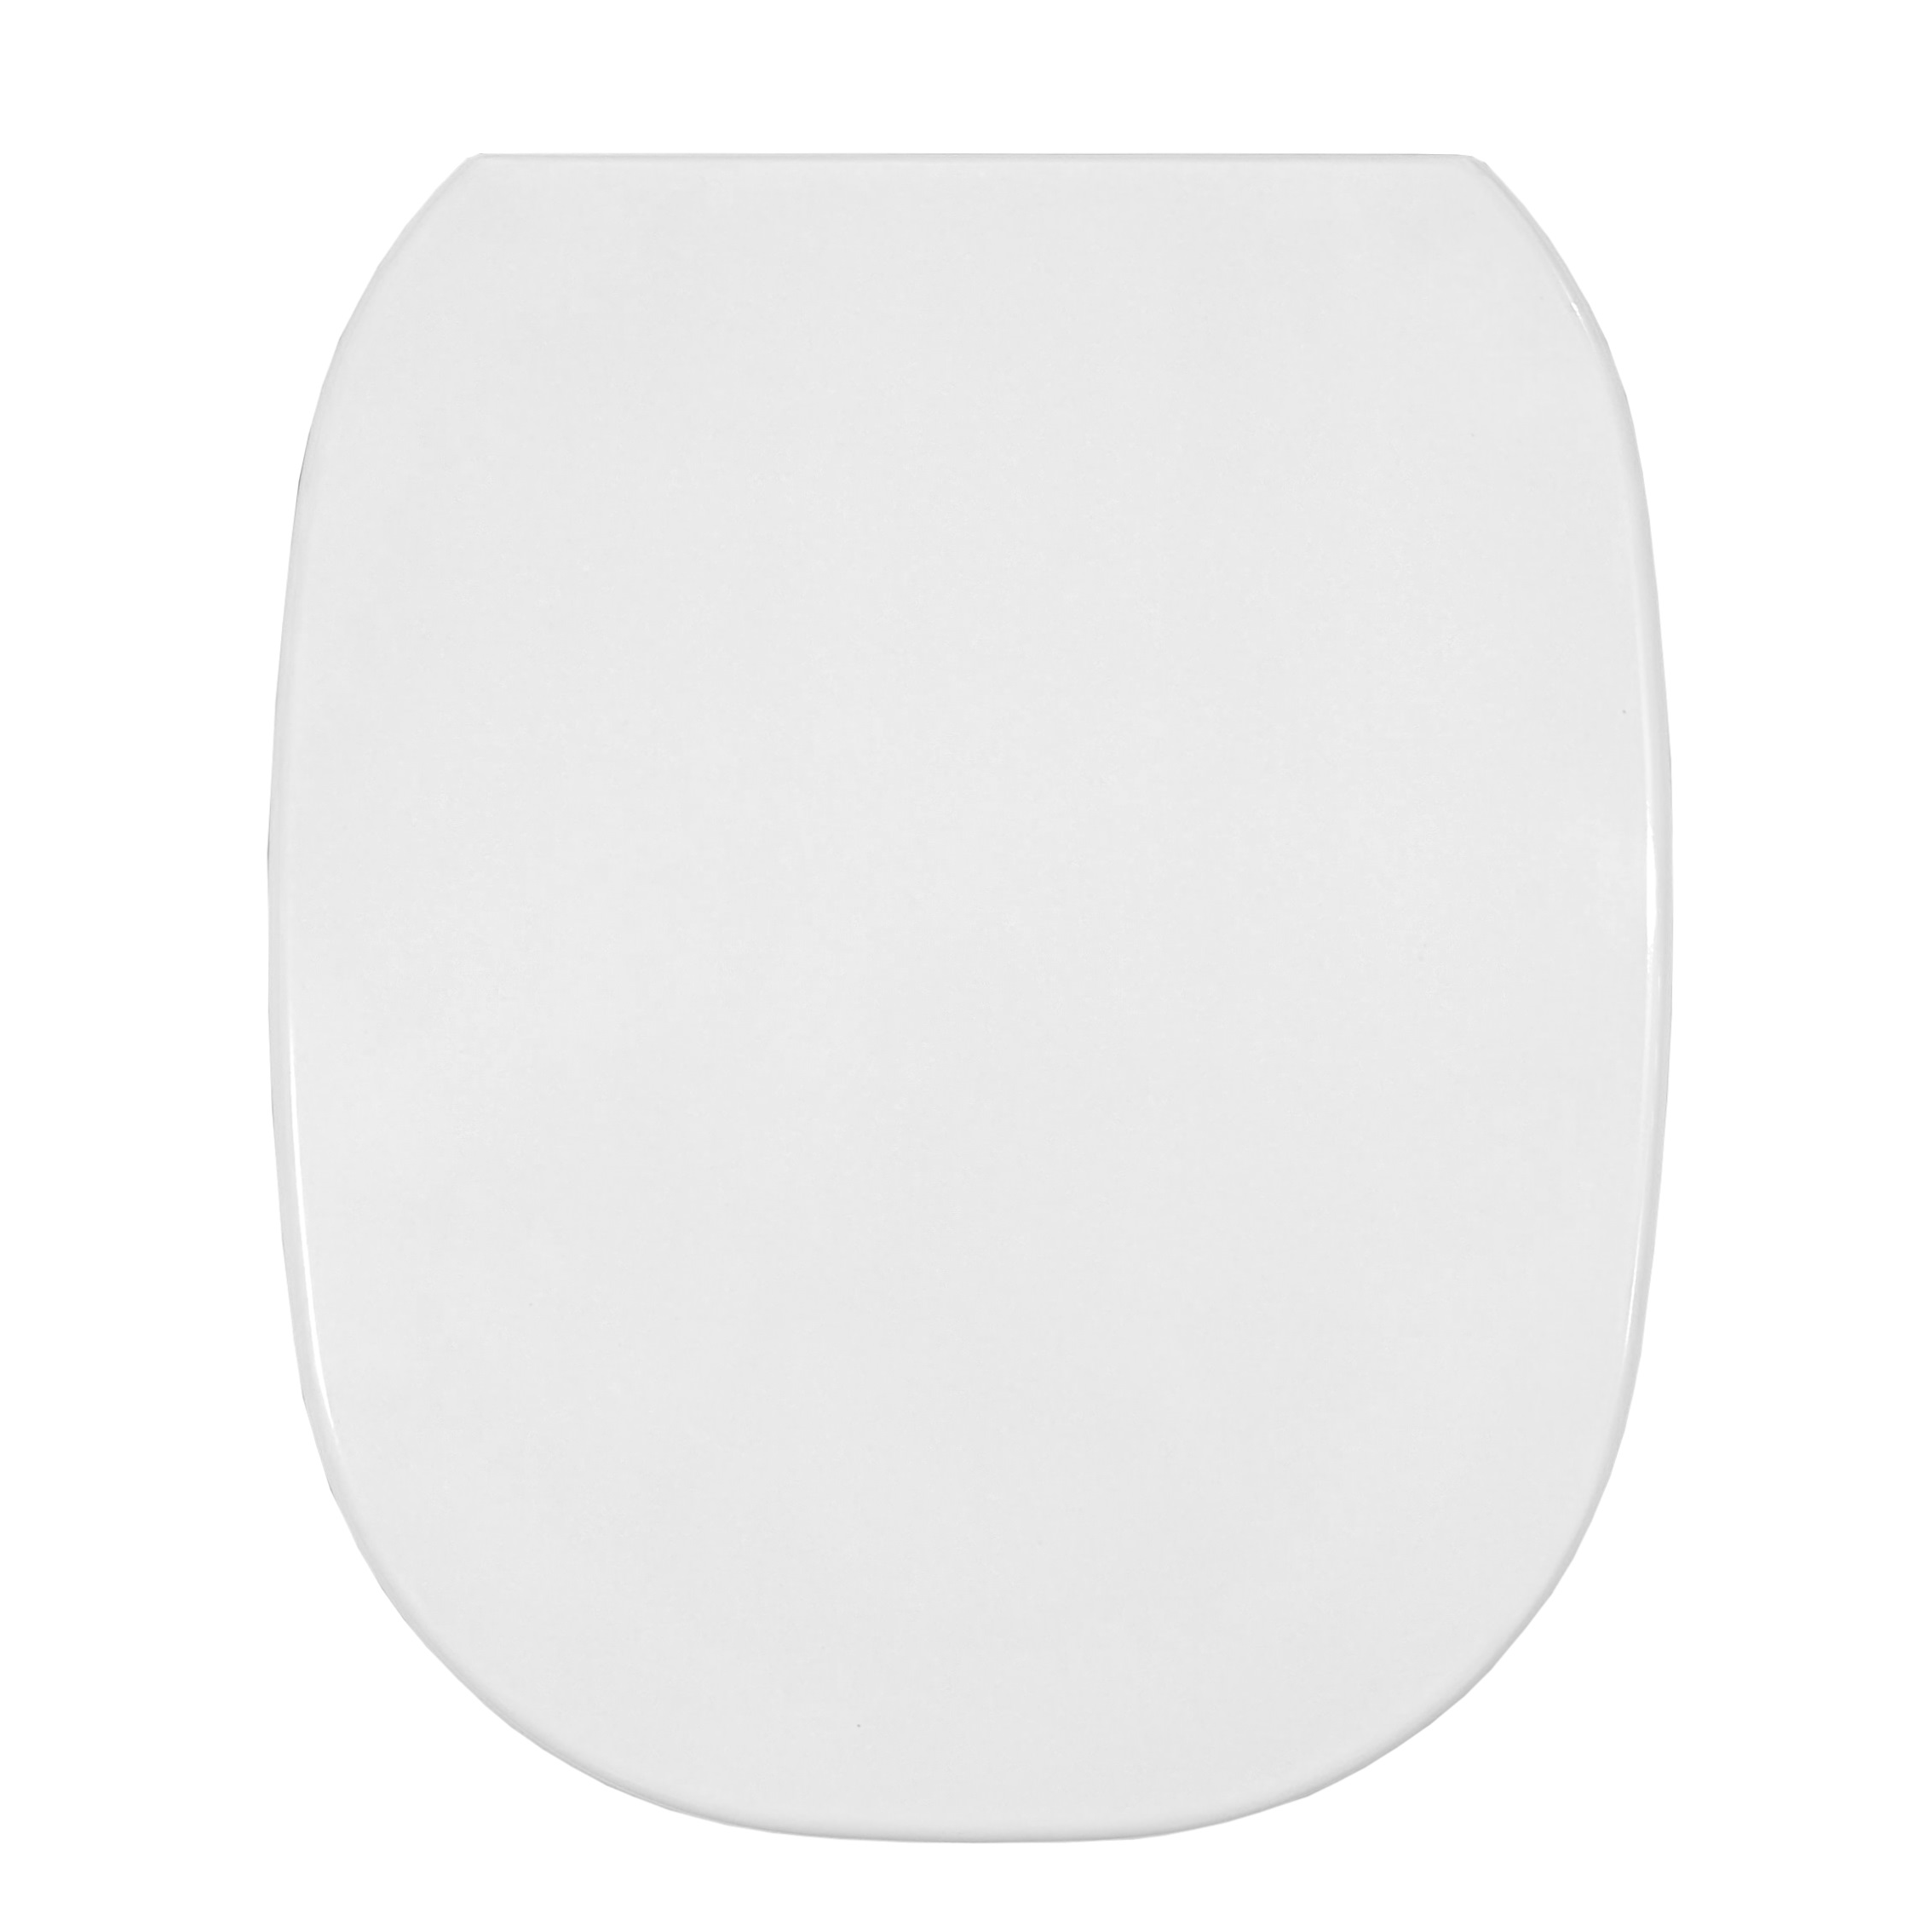 ALLIA Naos toilet seat, GINORI 500 Well, white